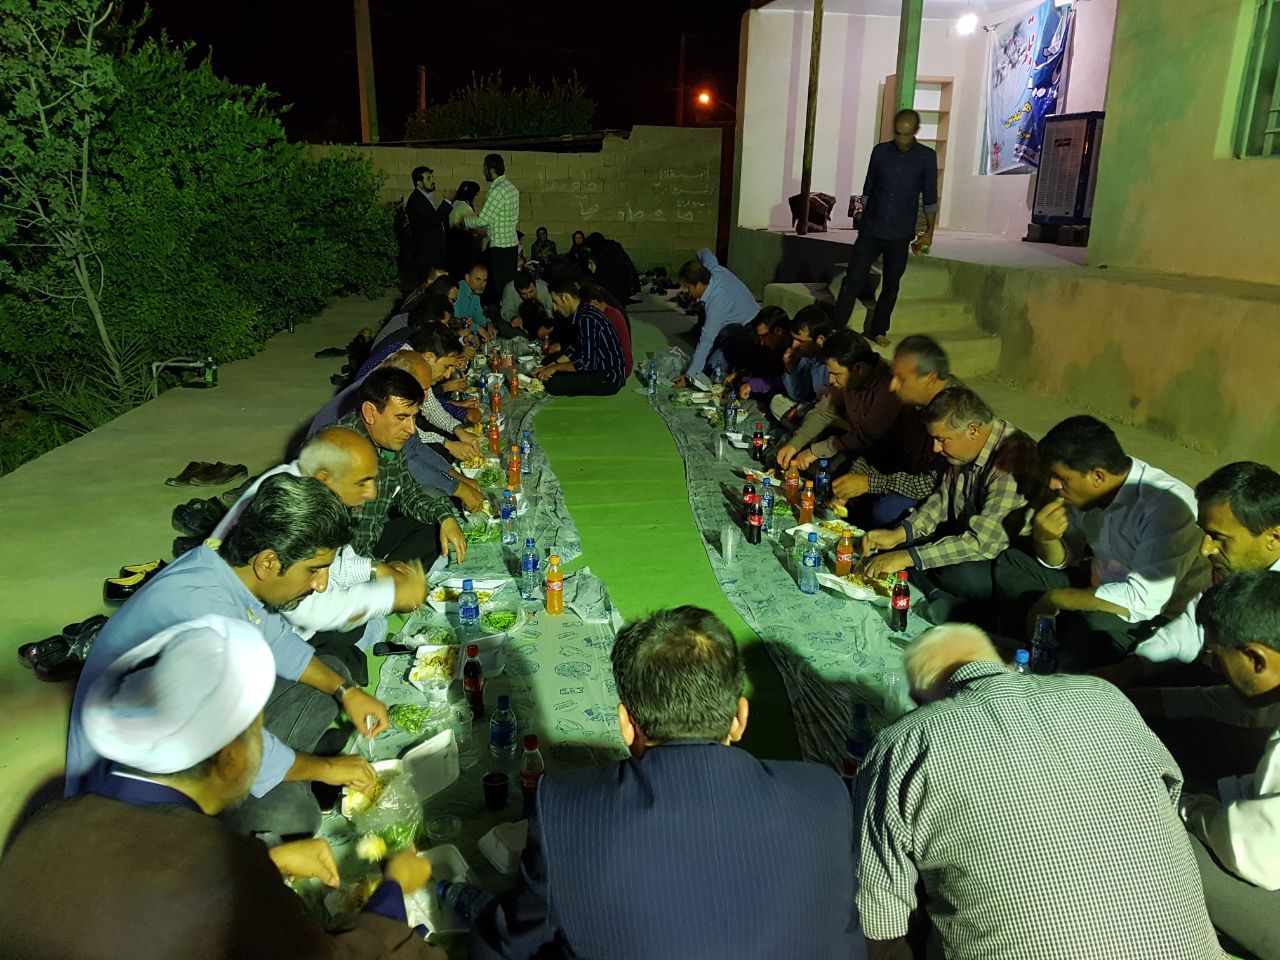 اختتامیه جشن ویژه ی ماه مبارک رمضان و تجلیل از فعالان فرهنگی و مدیران کانون های فرهنگی و هنری مساجد شهرستان لنده